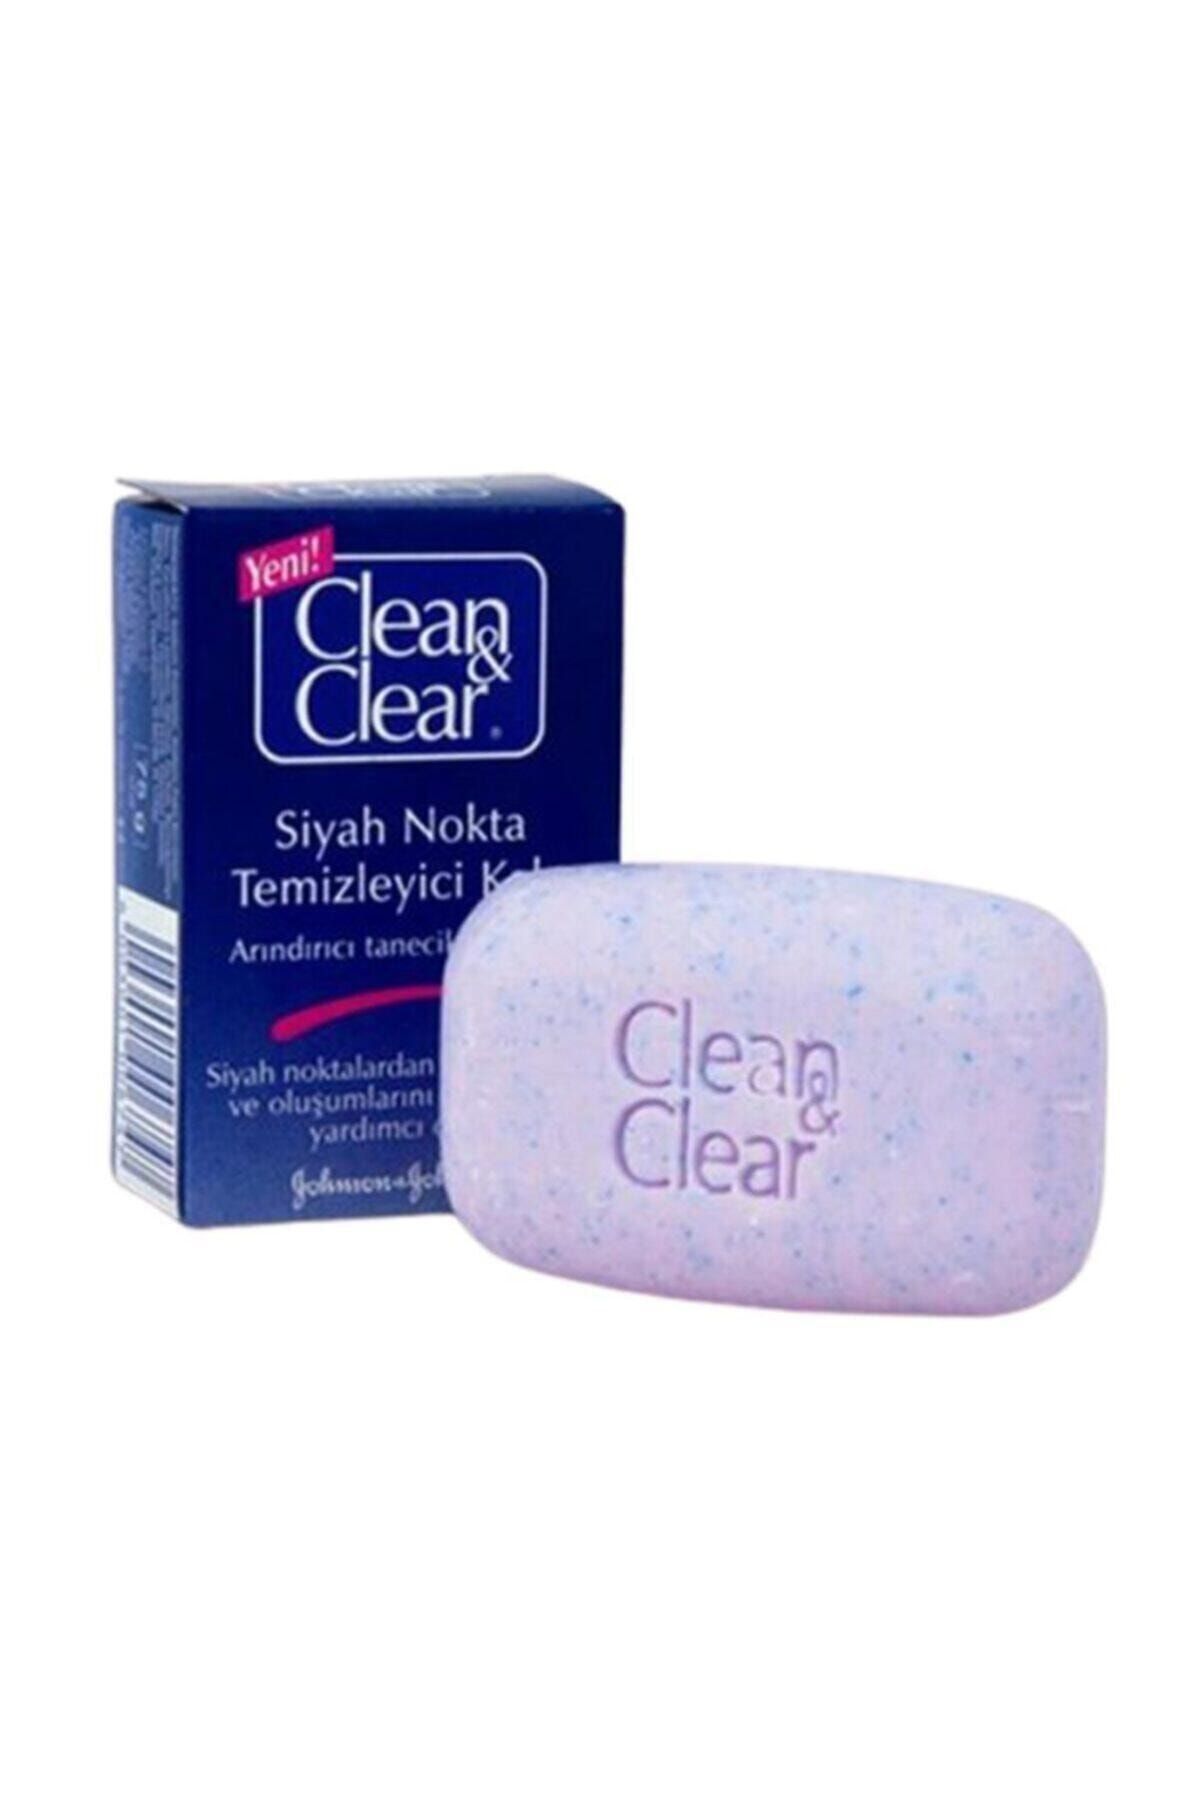 Clean & Clear Siyah Nokta Temizleyici Sabun 75 G (kalıp)